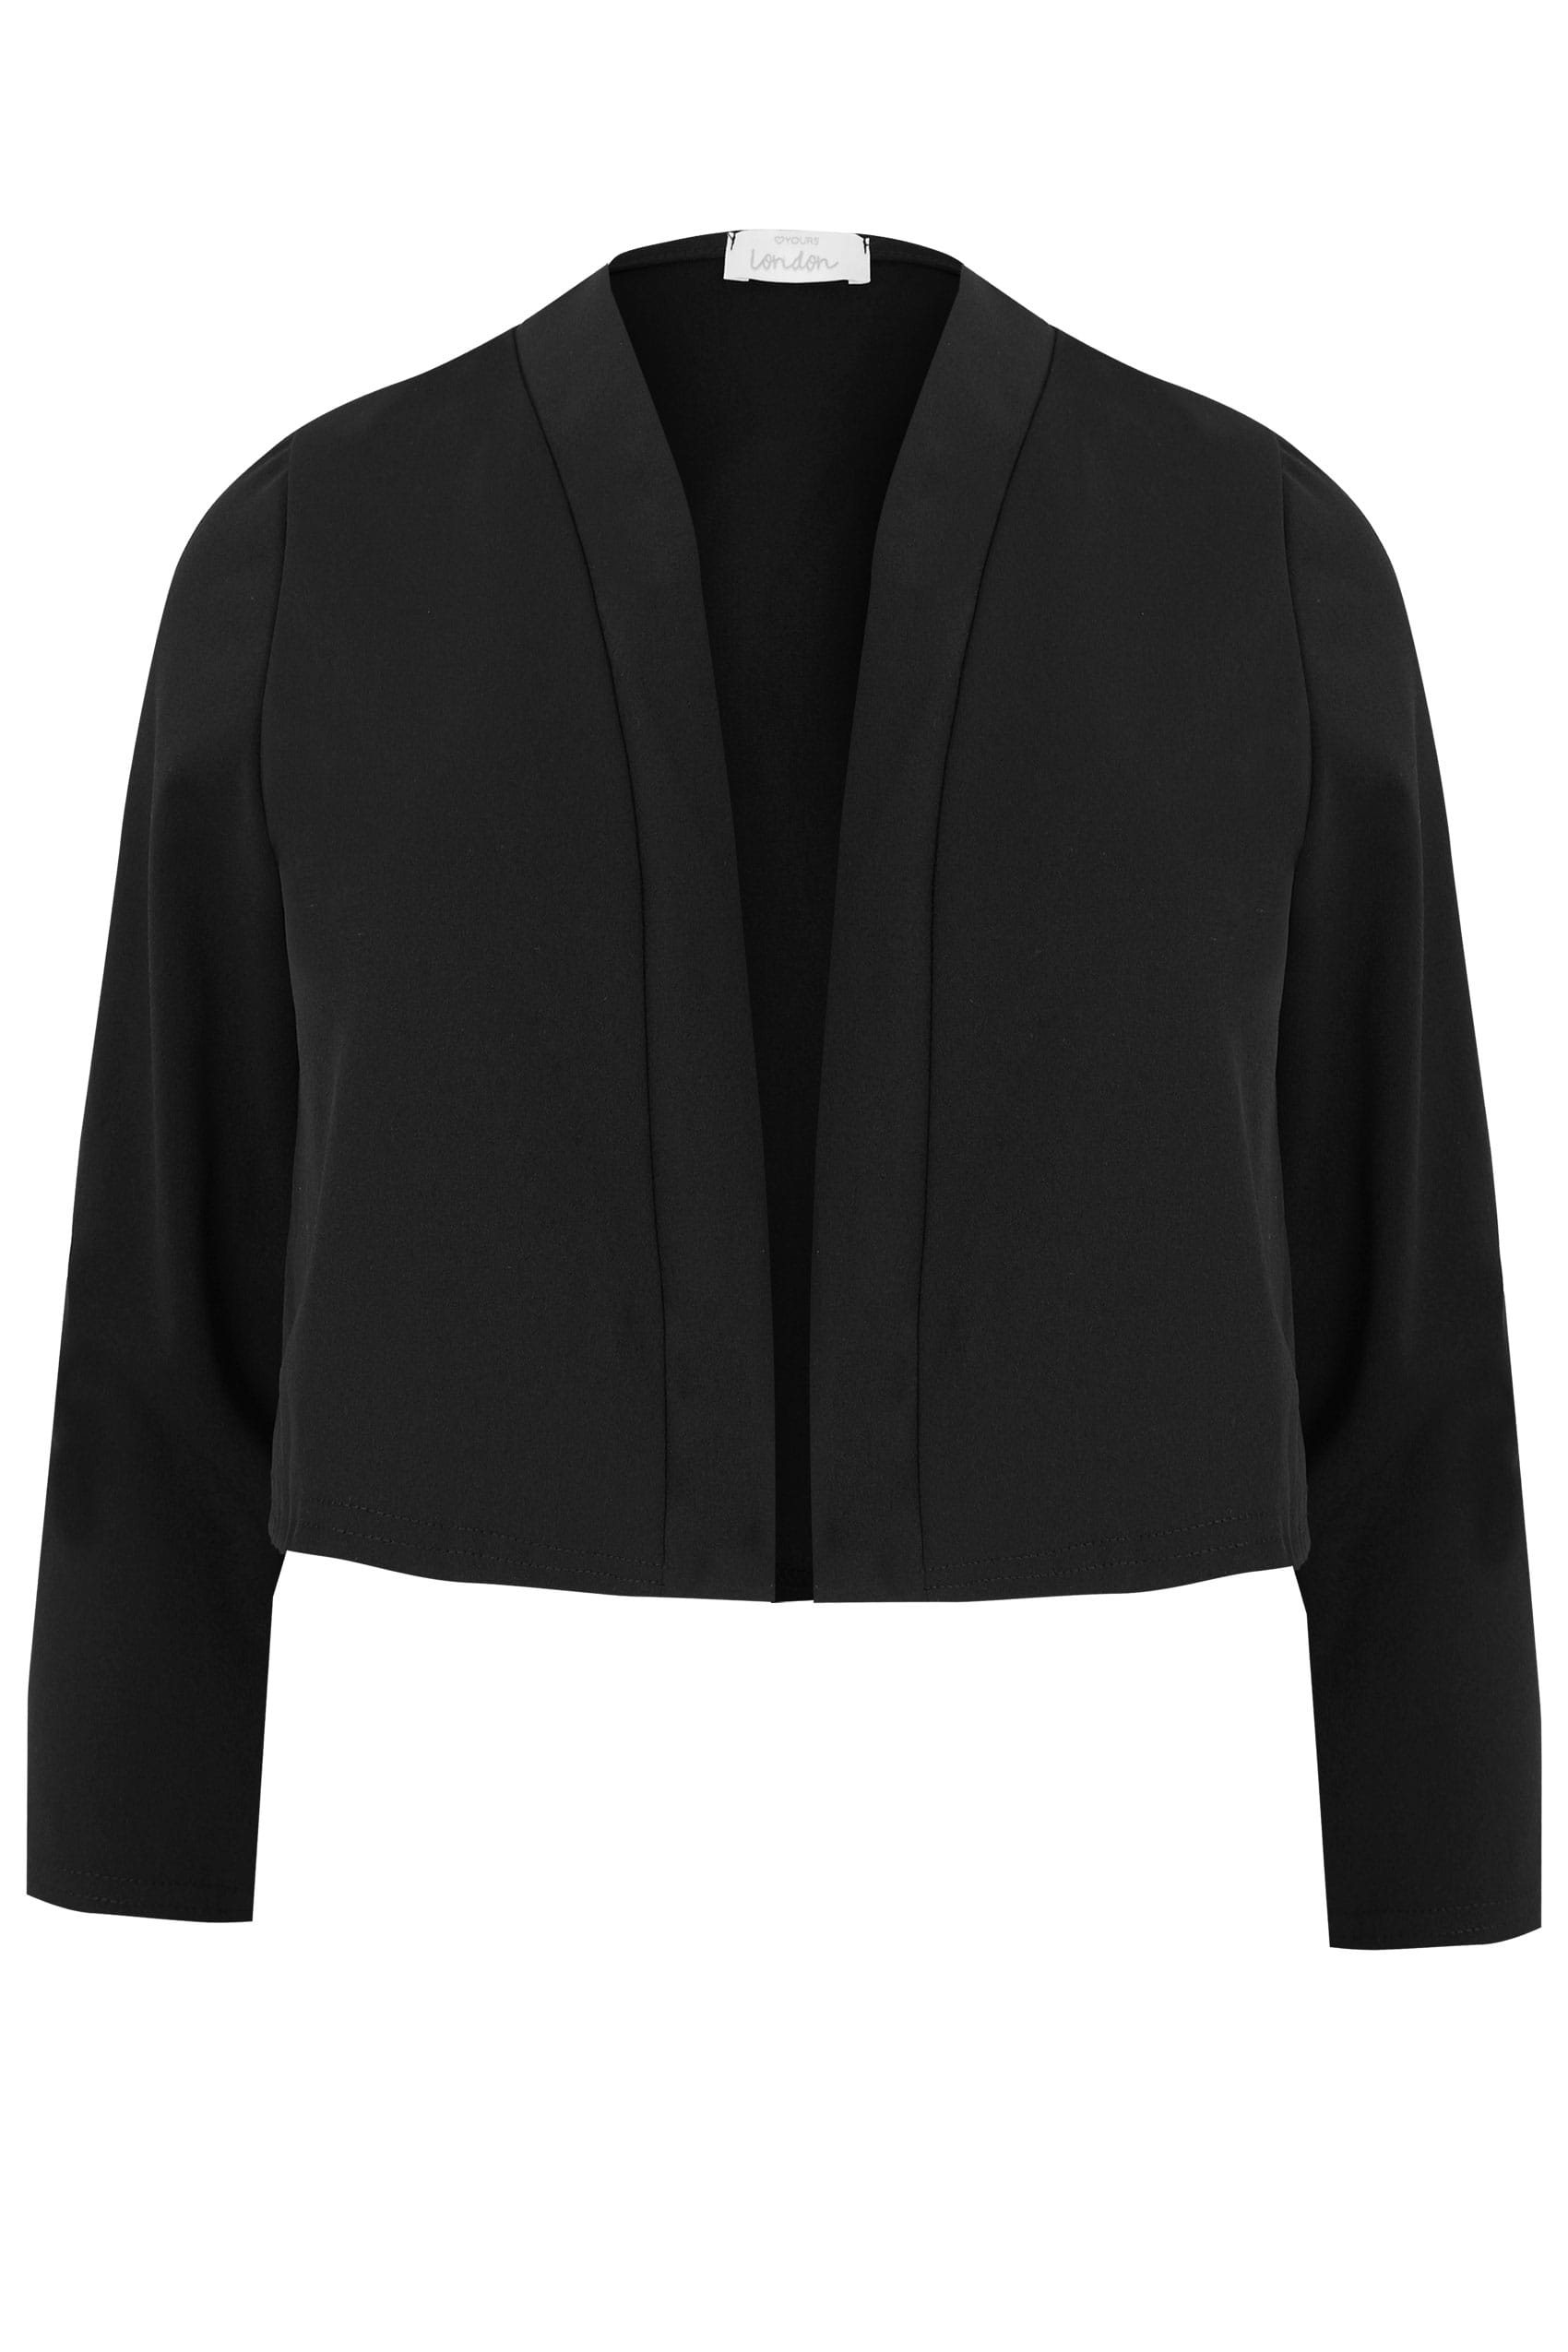 YOURS LONDON Black Bolero Jacket, Plus size 16 to 32